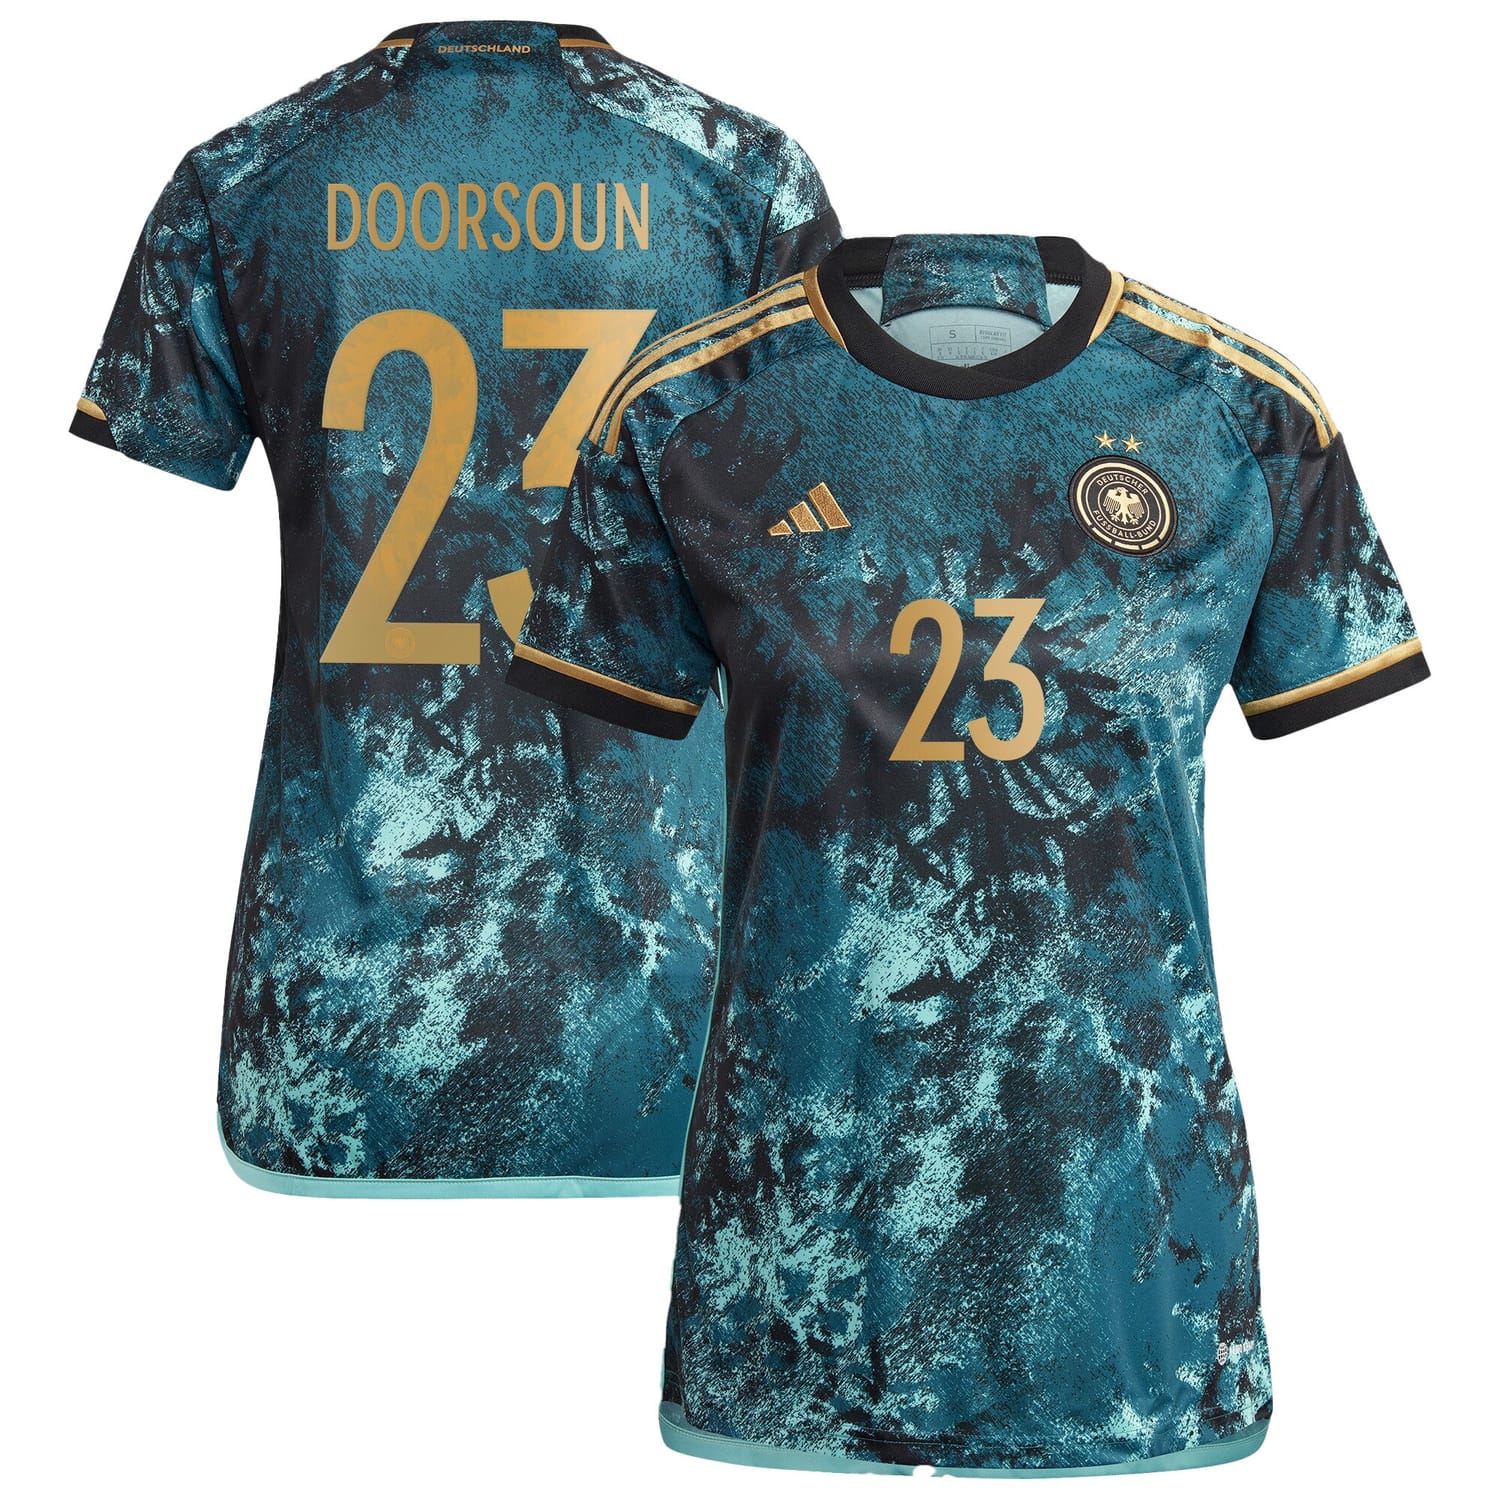 Germany National Team Away Jersey Shirt 2023 player Sara Doorsoun 23 printing for Women